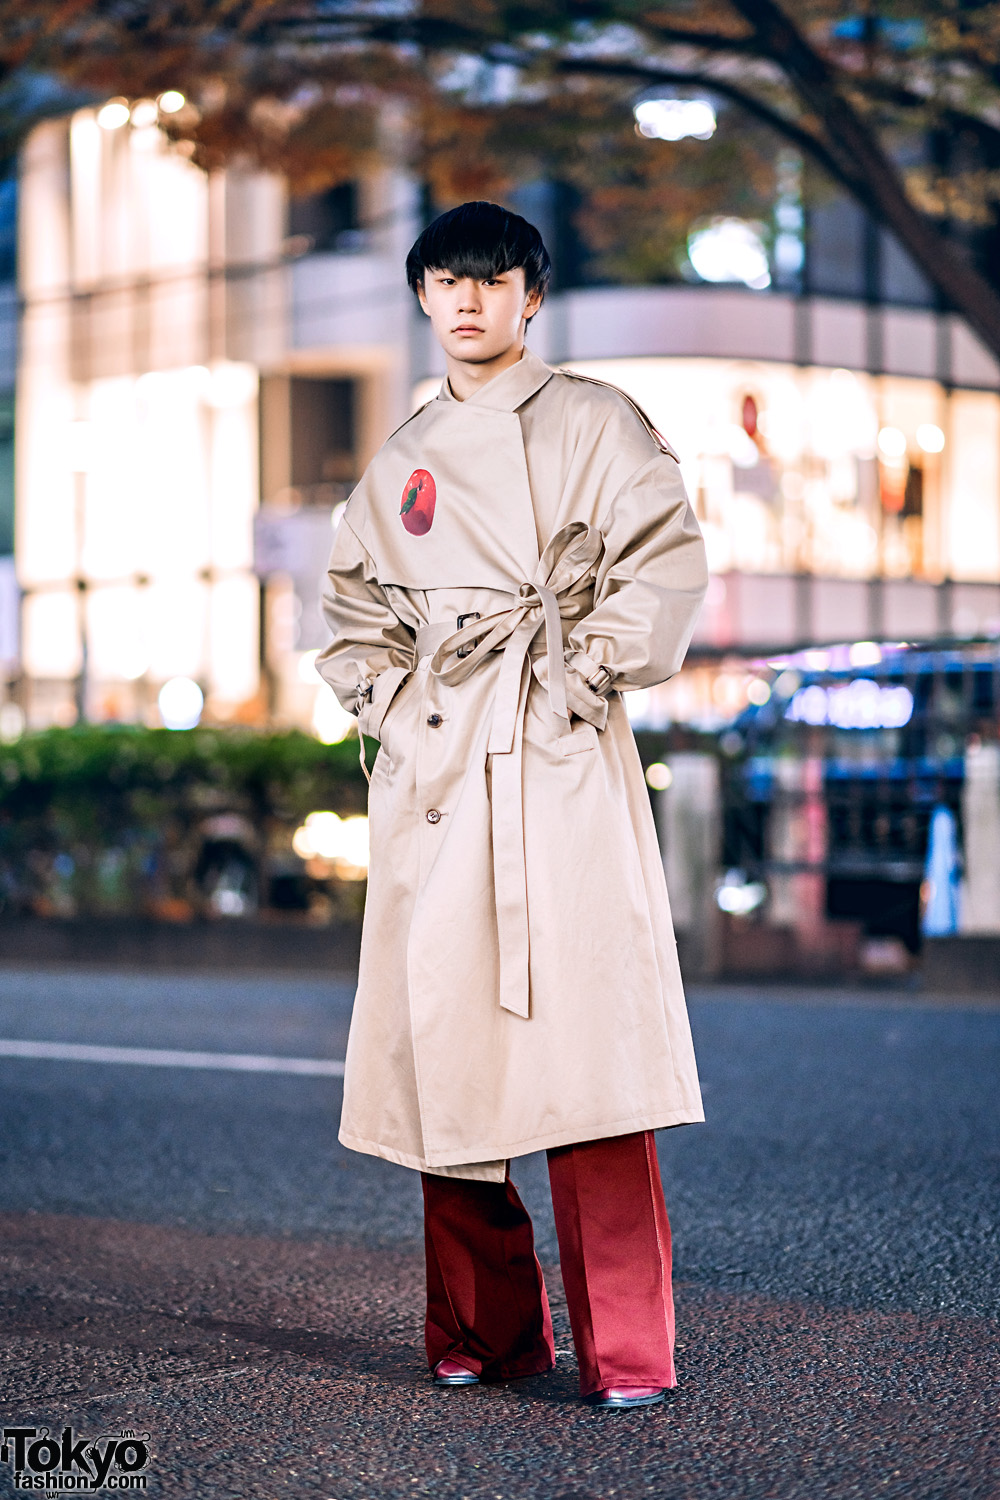 Menswear Winter Street Style w/ Blunt Bob, Oversized Keisuke